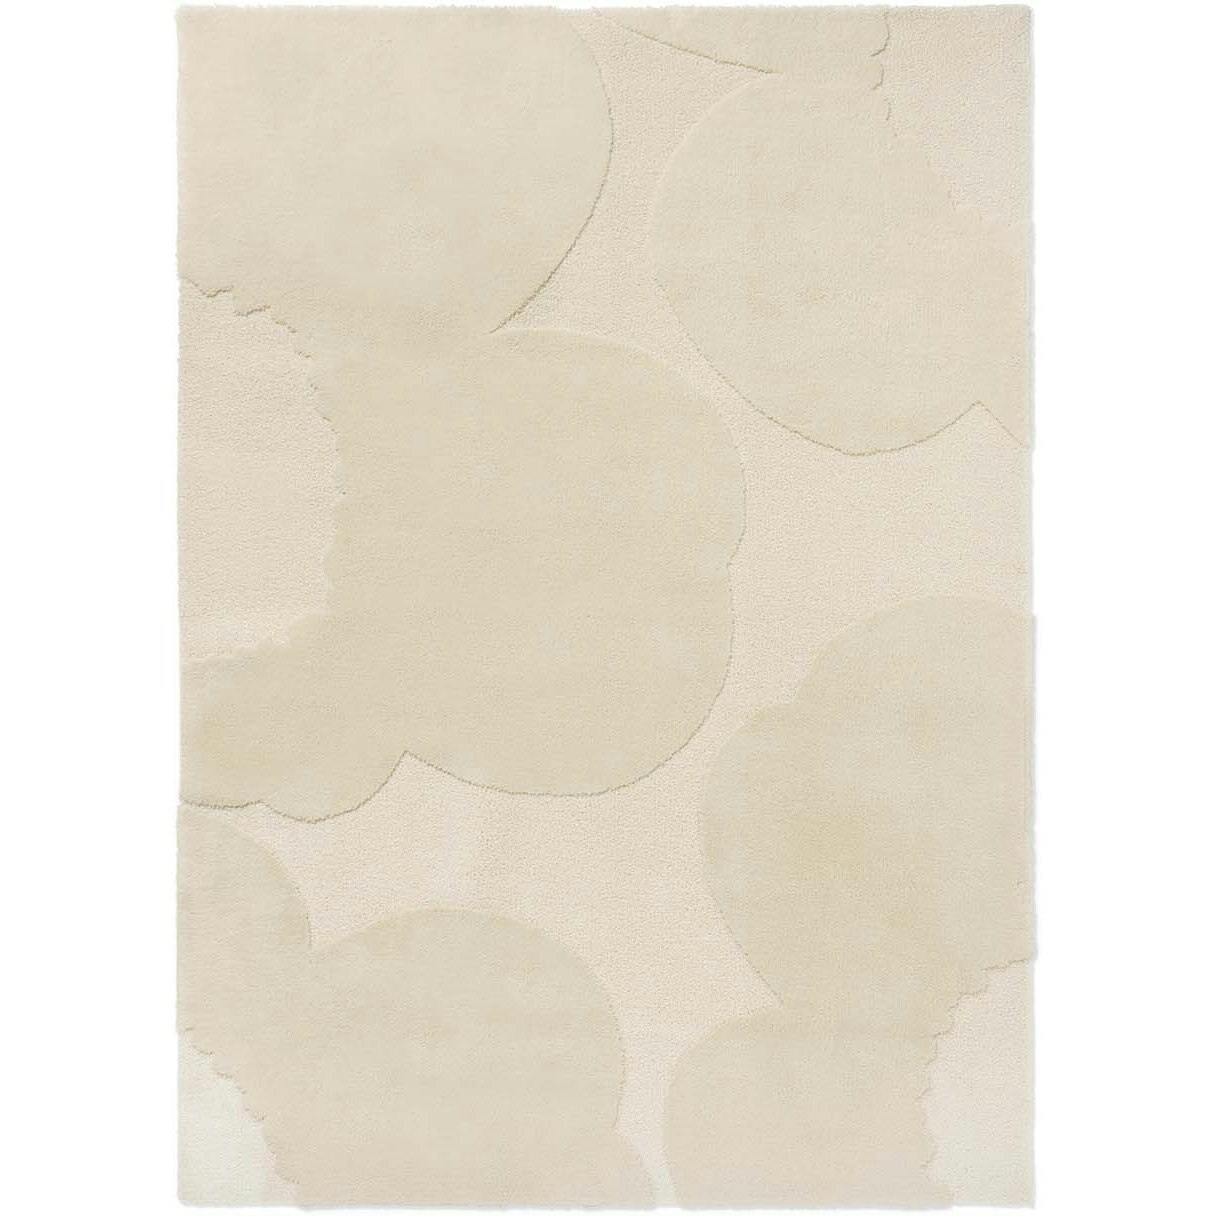 Marimekko Iso Unikko Teppich 250x350 cm, Natural White